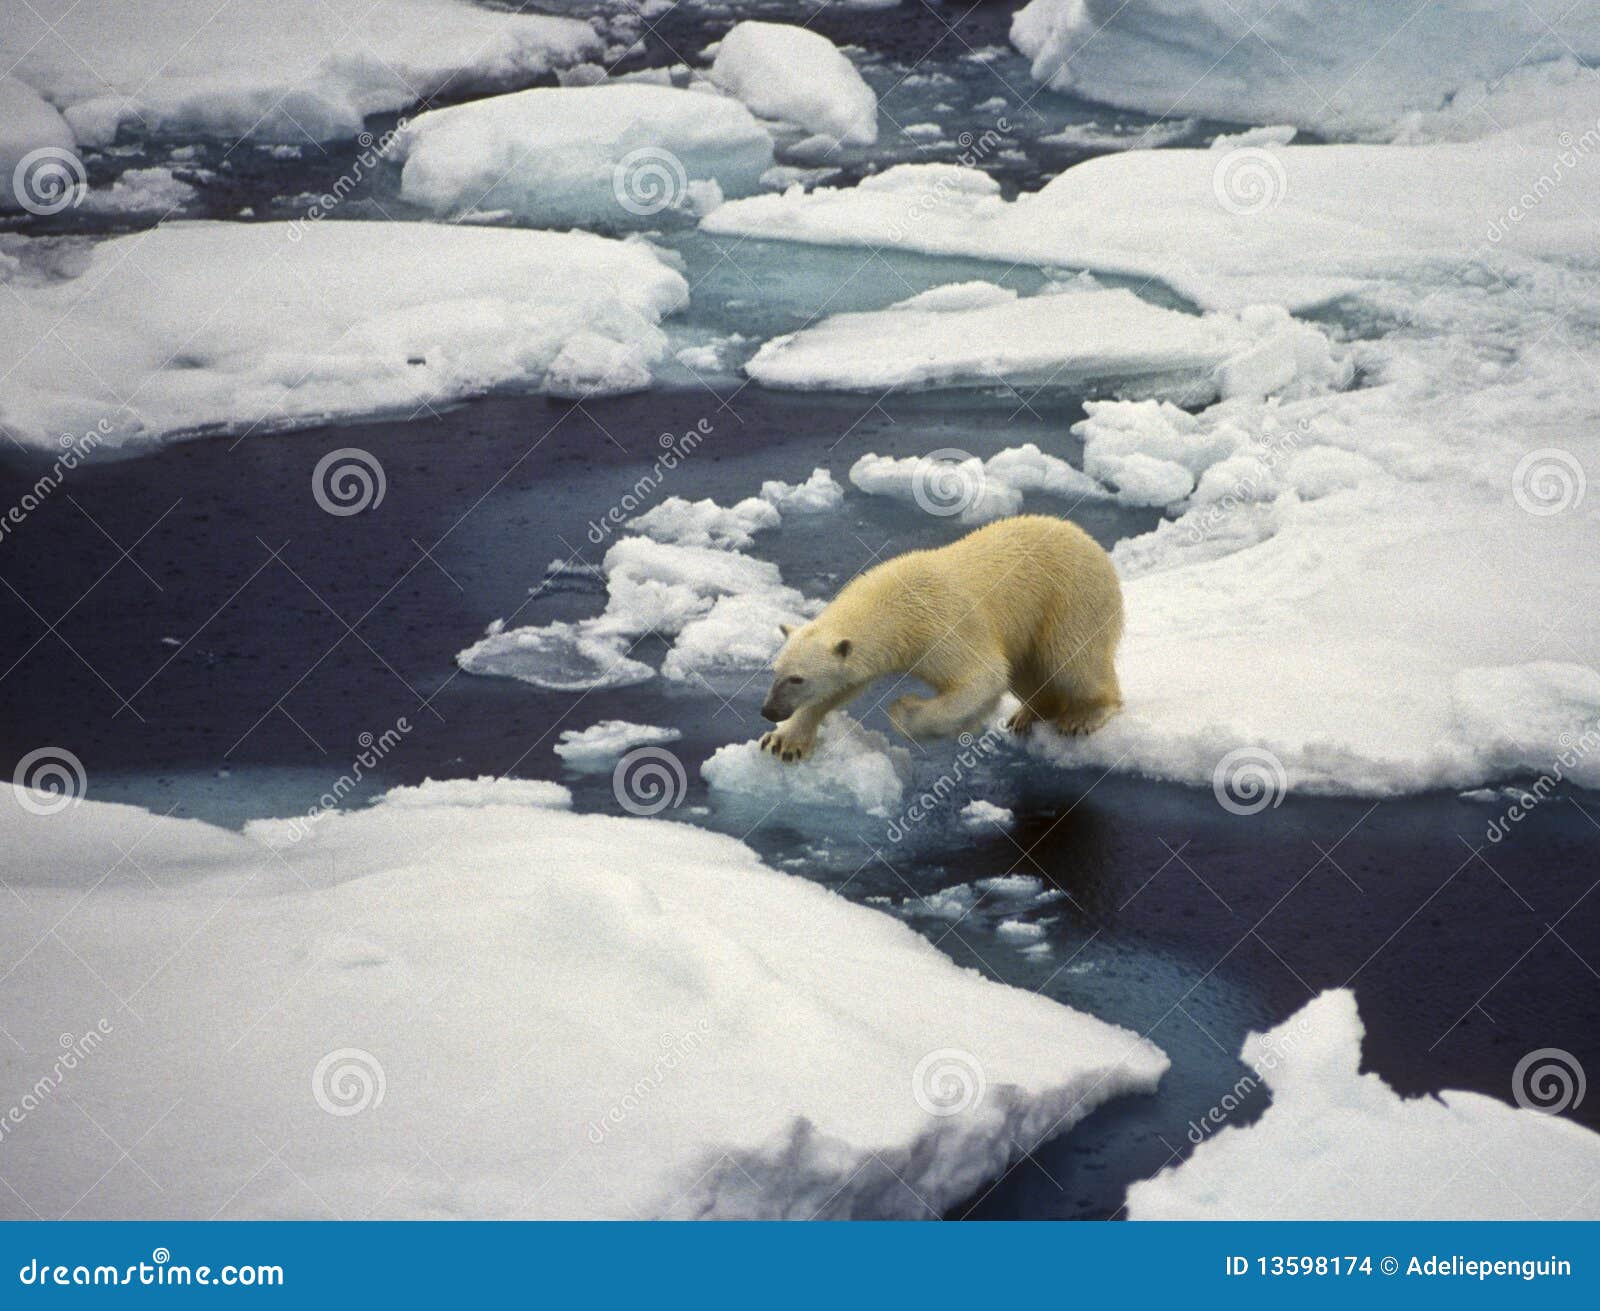 polar bear on ice, svalbard